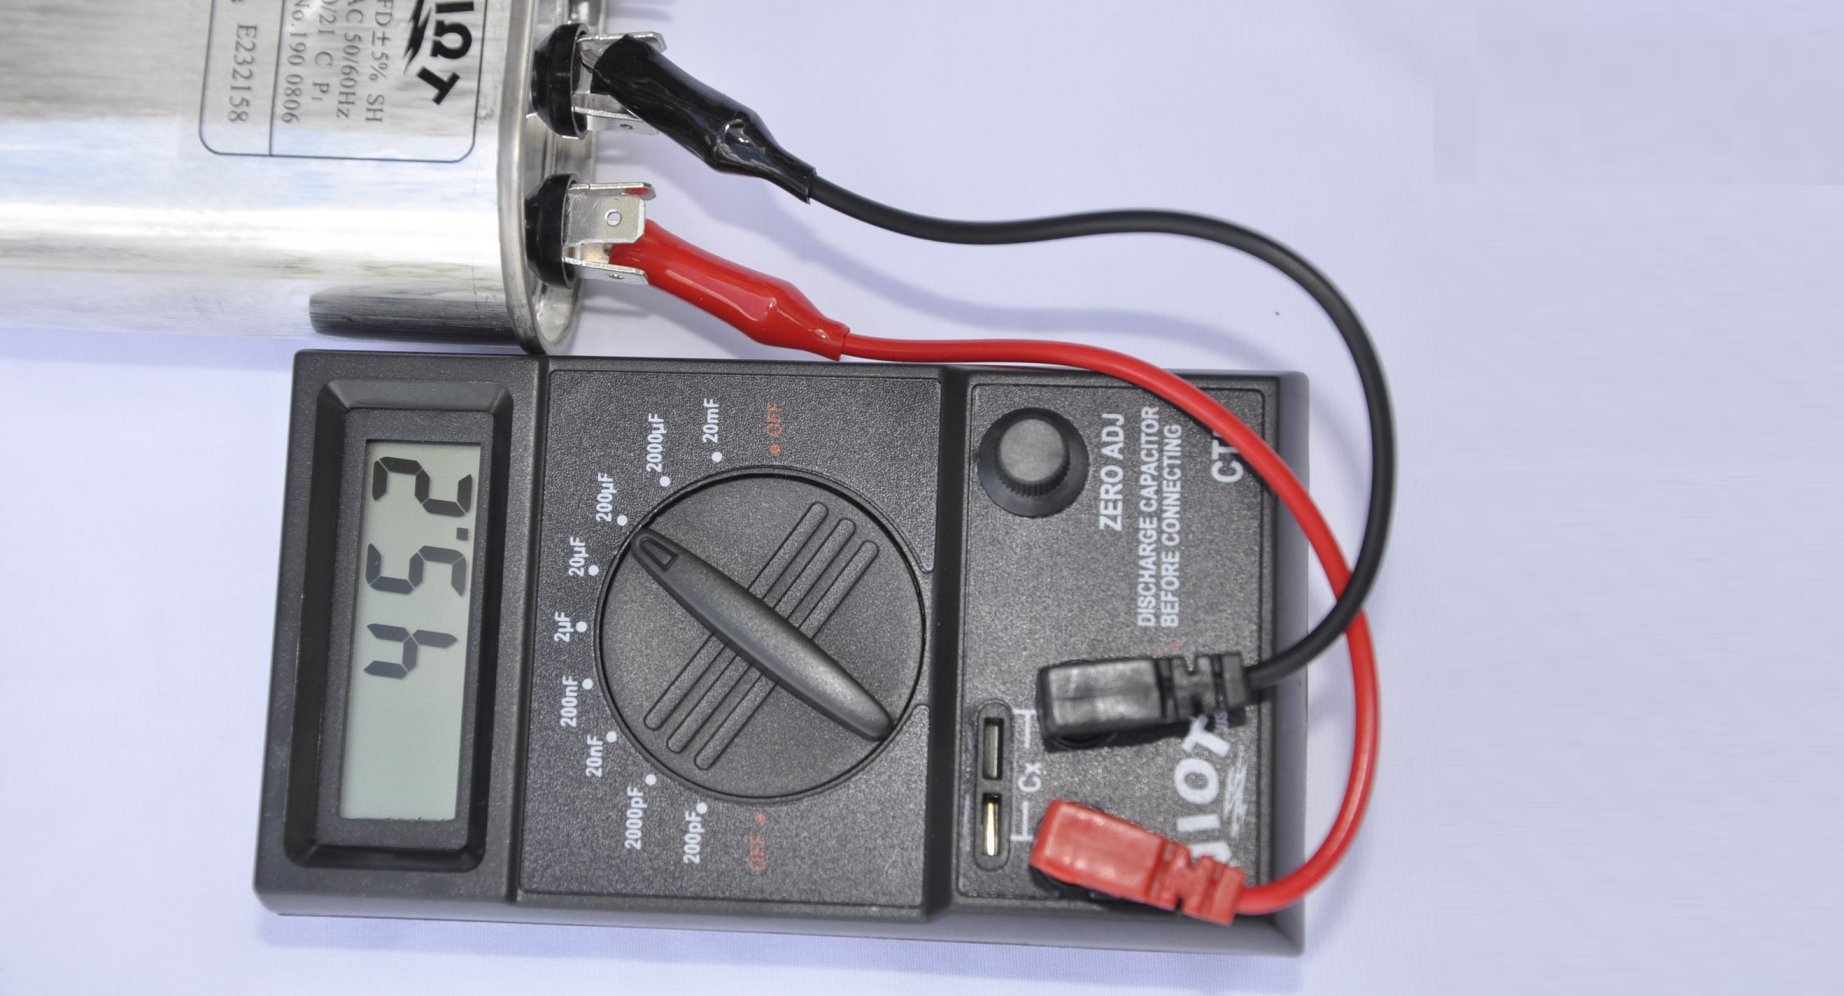 kontrol af kondensatoren med et multimeter